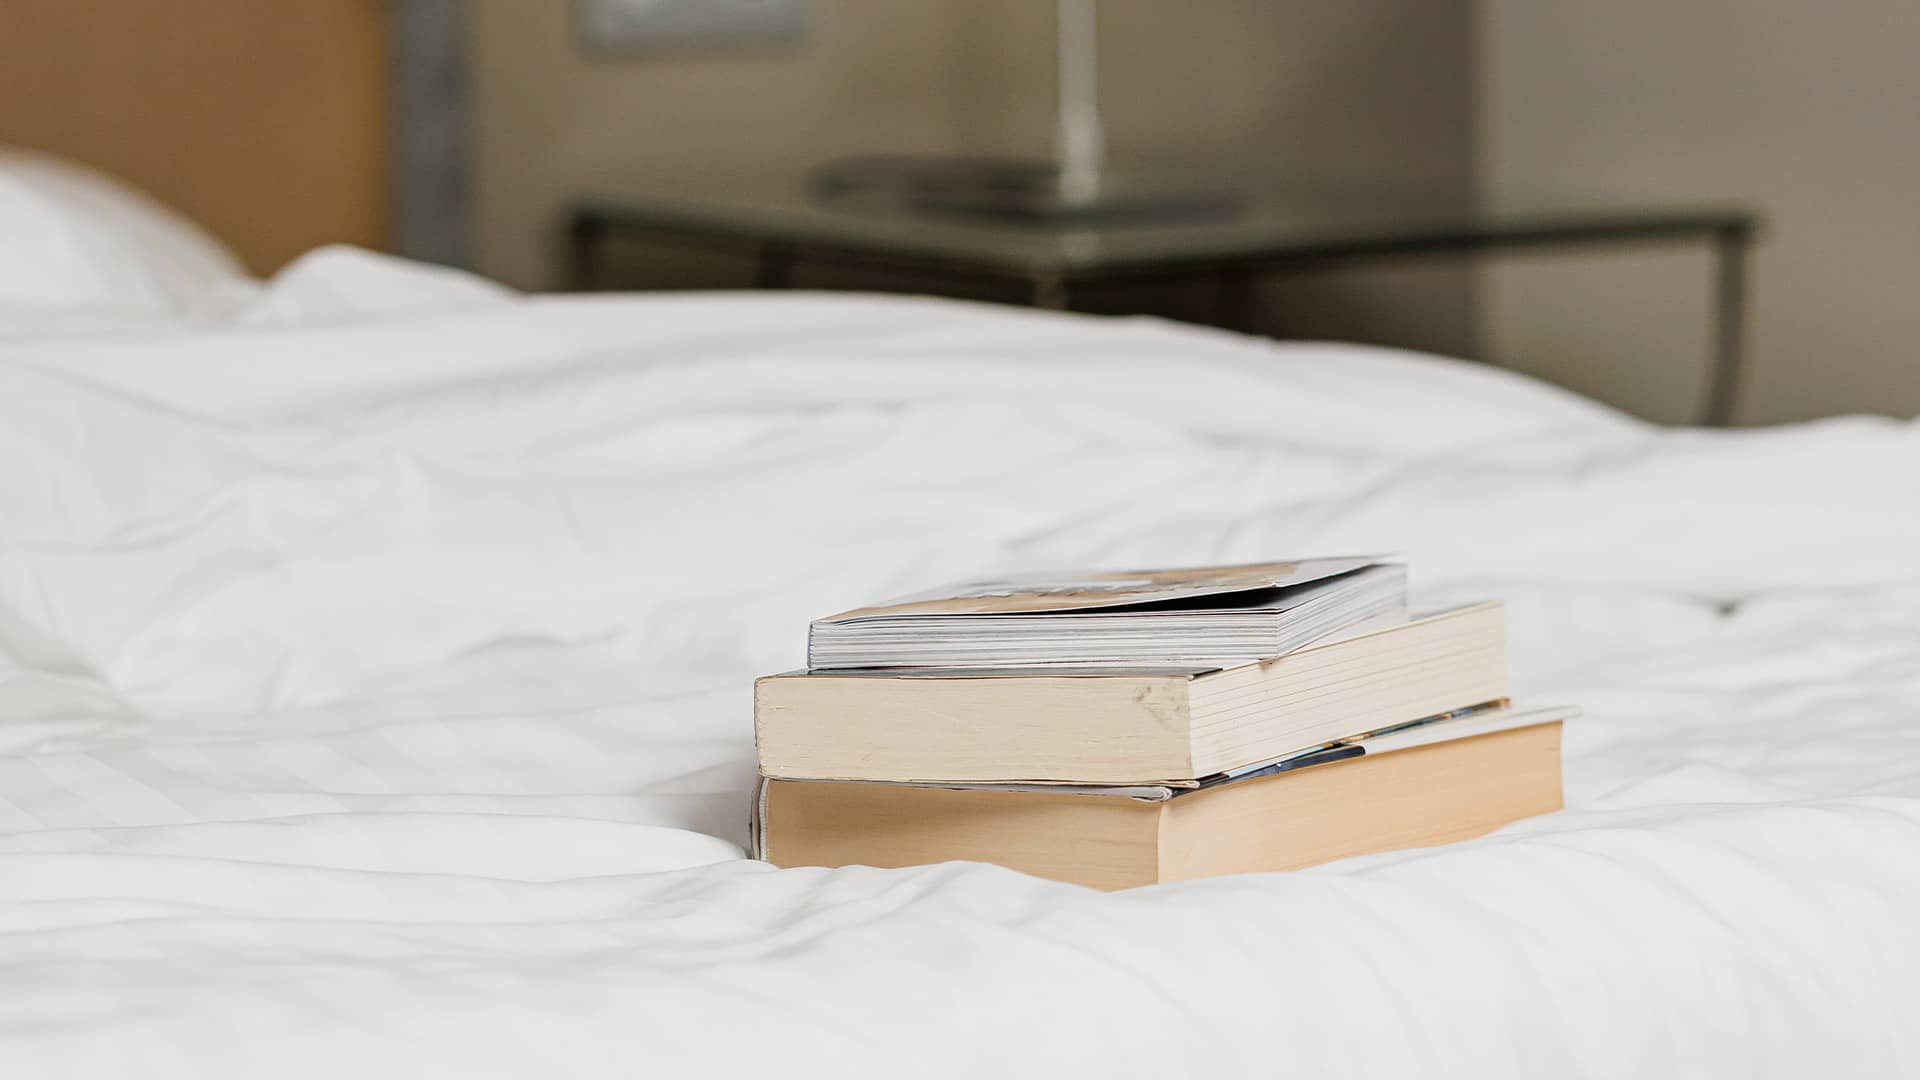 Detalle de libros encima de la cama